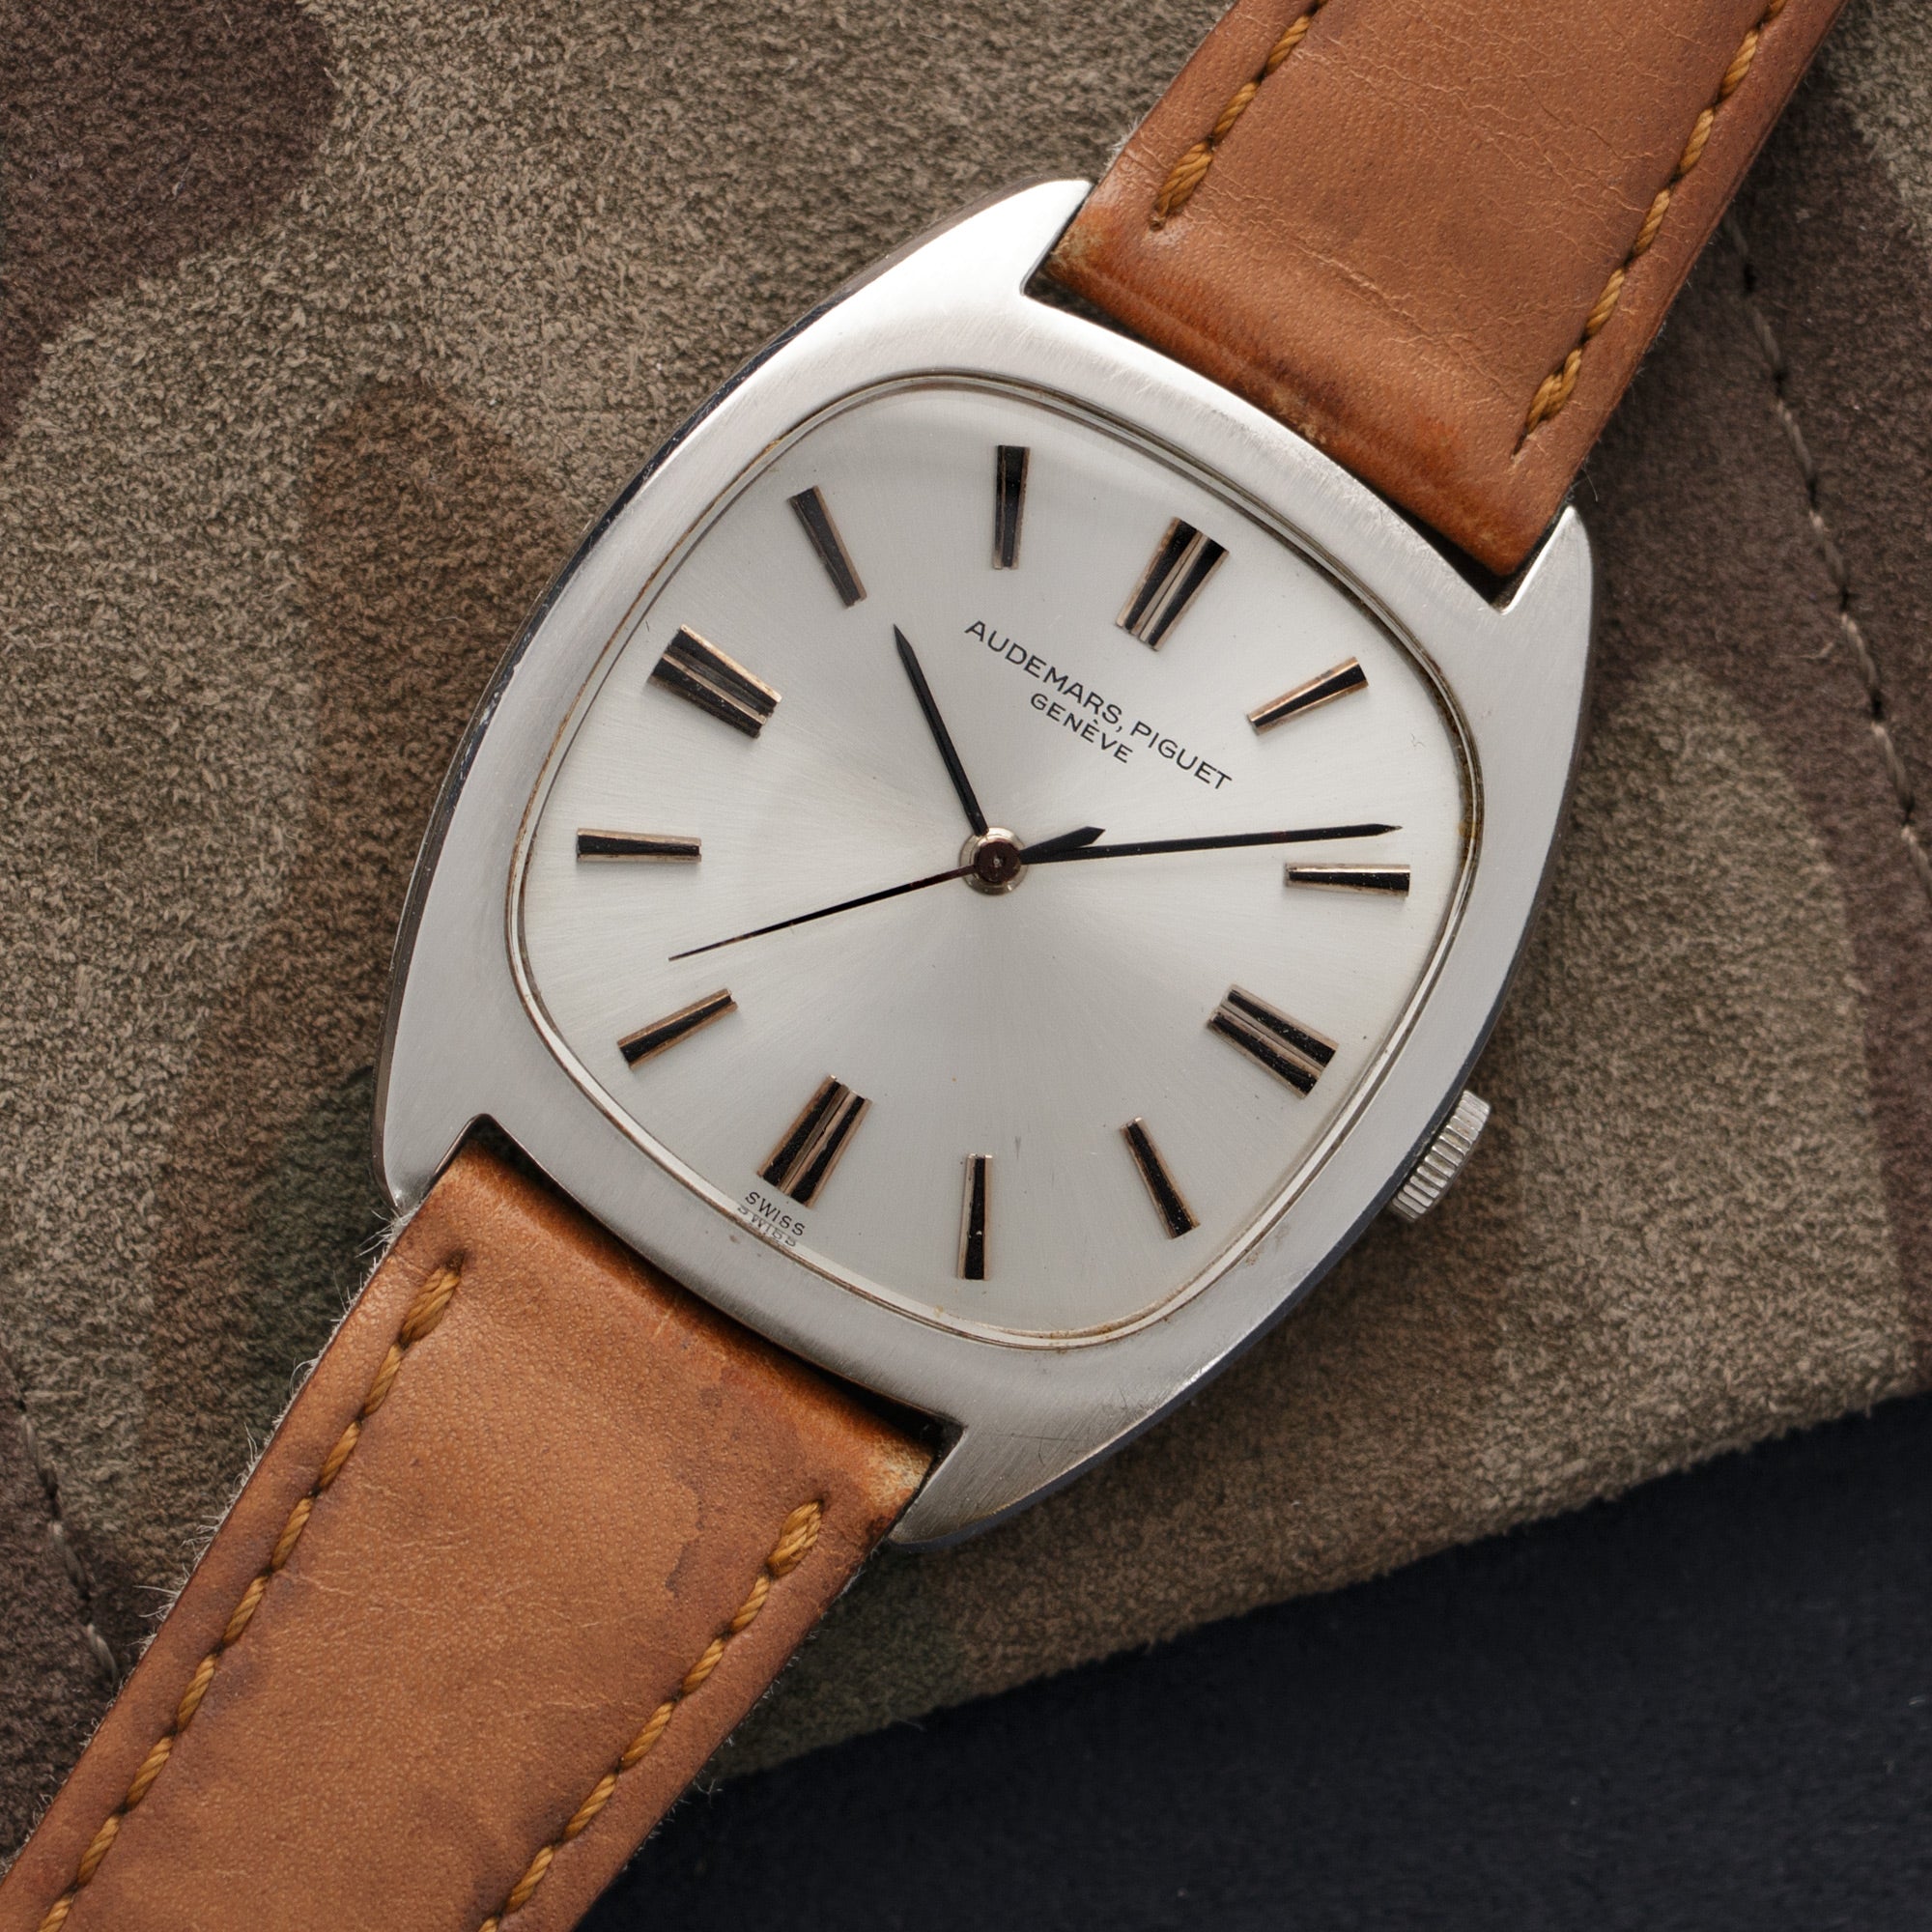 Audemars Piguet - Audemars Piguet Steel Tonneau-Shaped Watch Ref. 5369 - The Keystone Watches